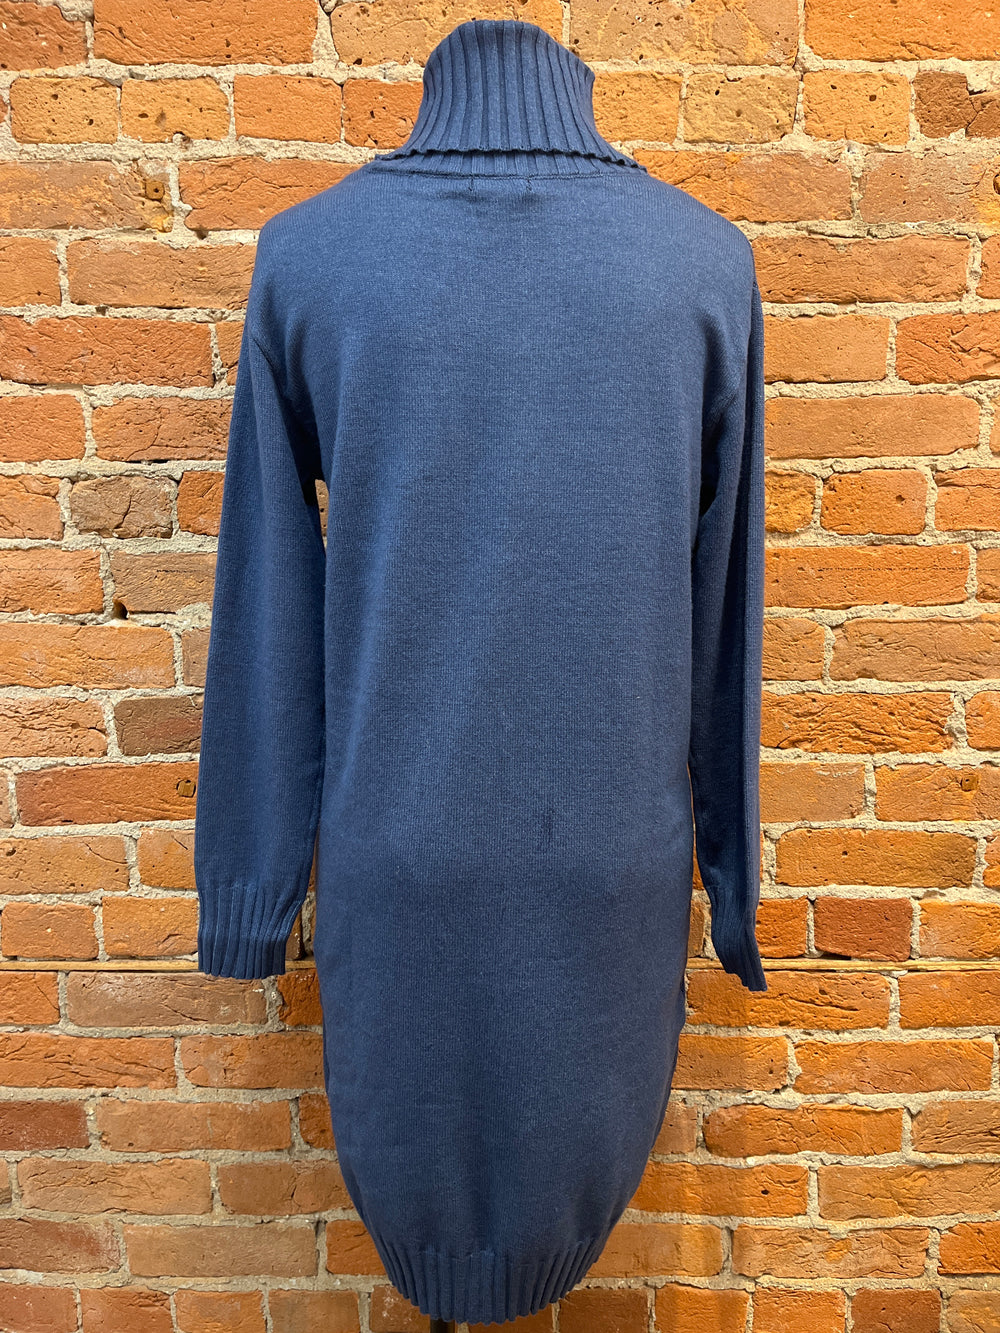 Renuar dress 4318, turtleneck sweater